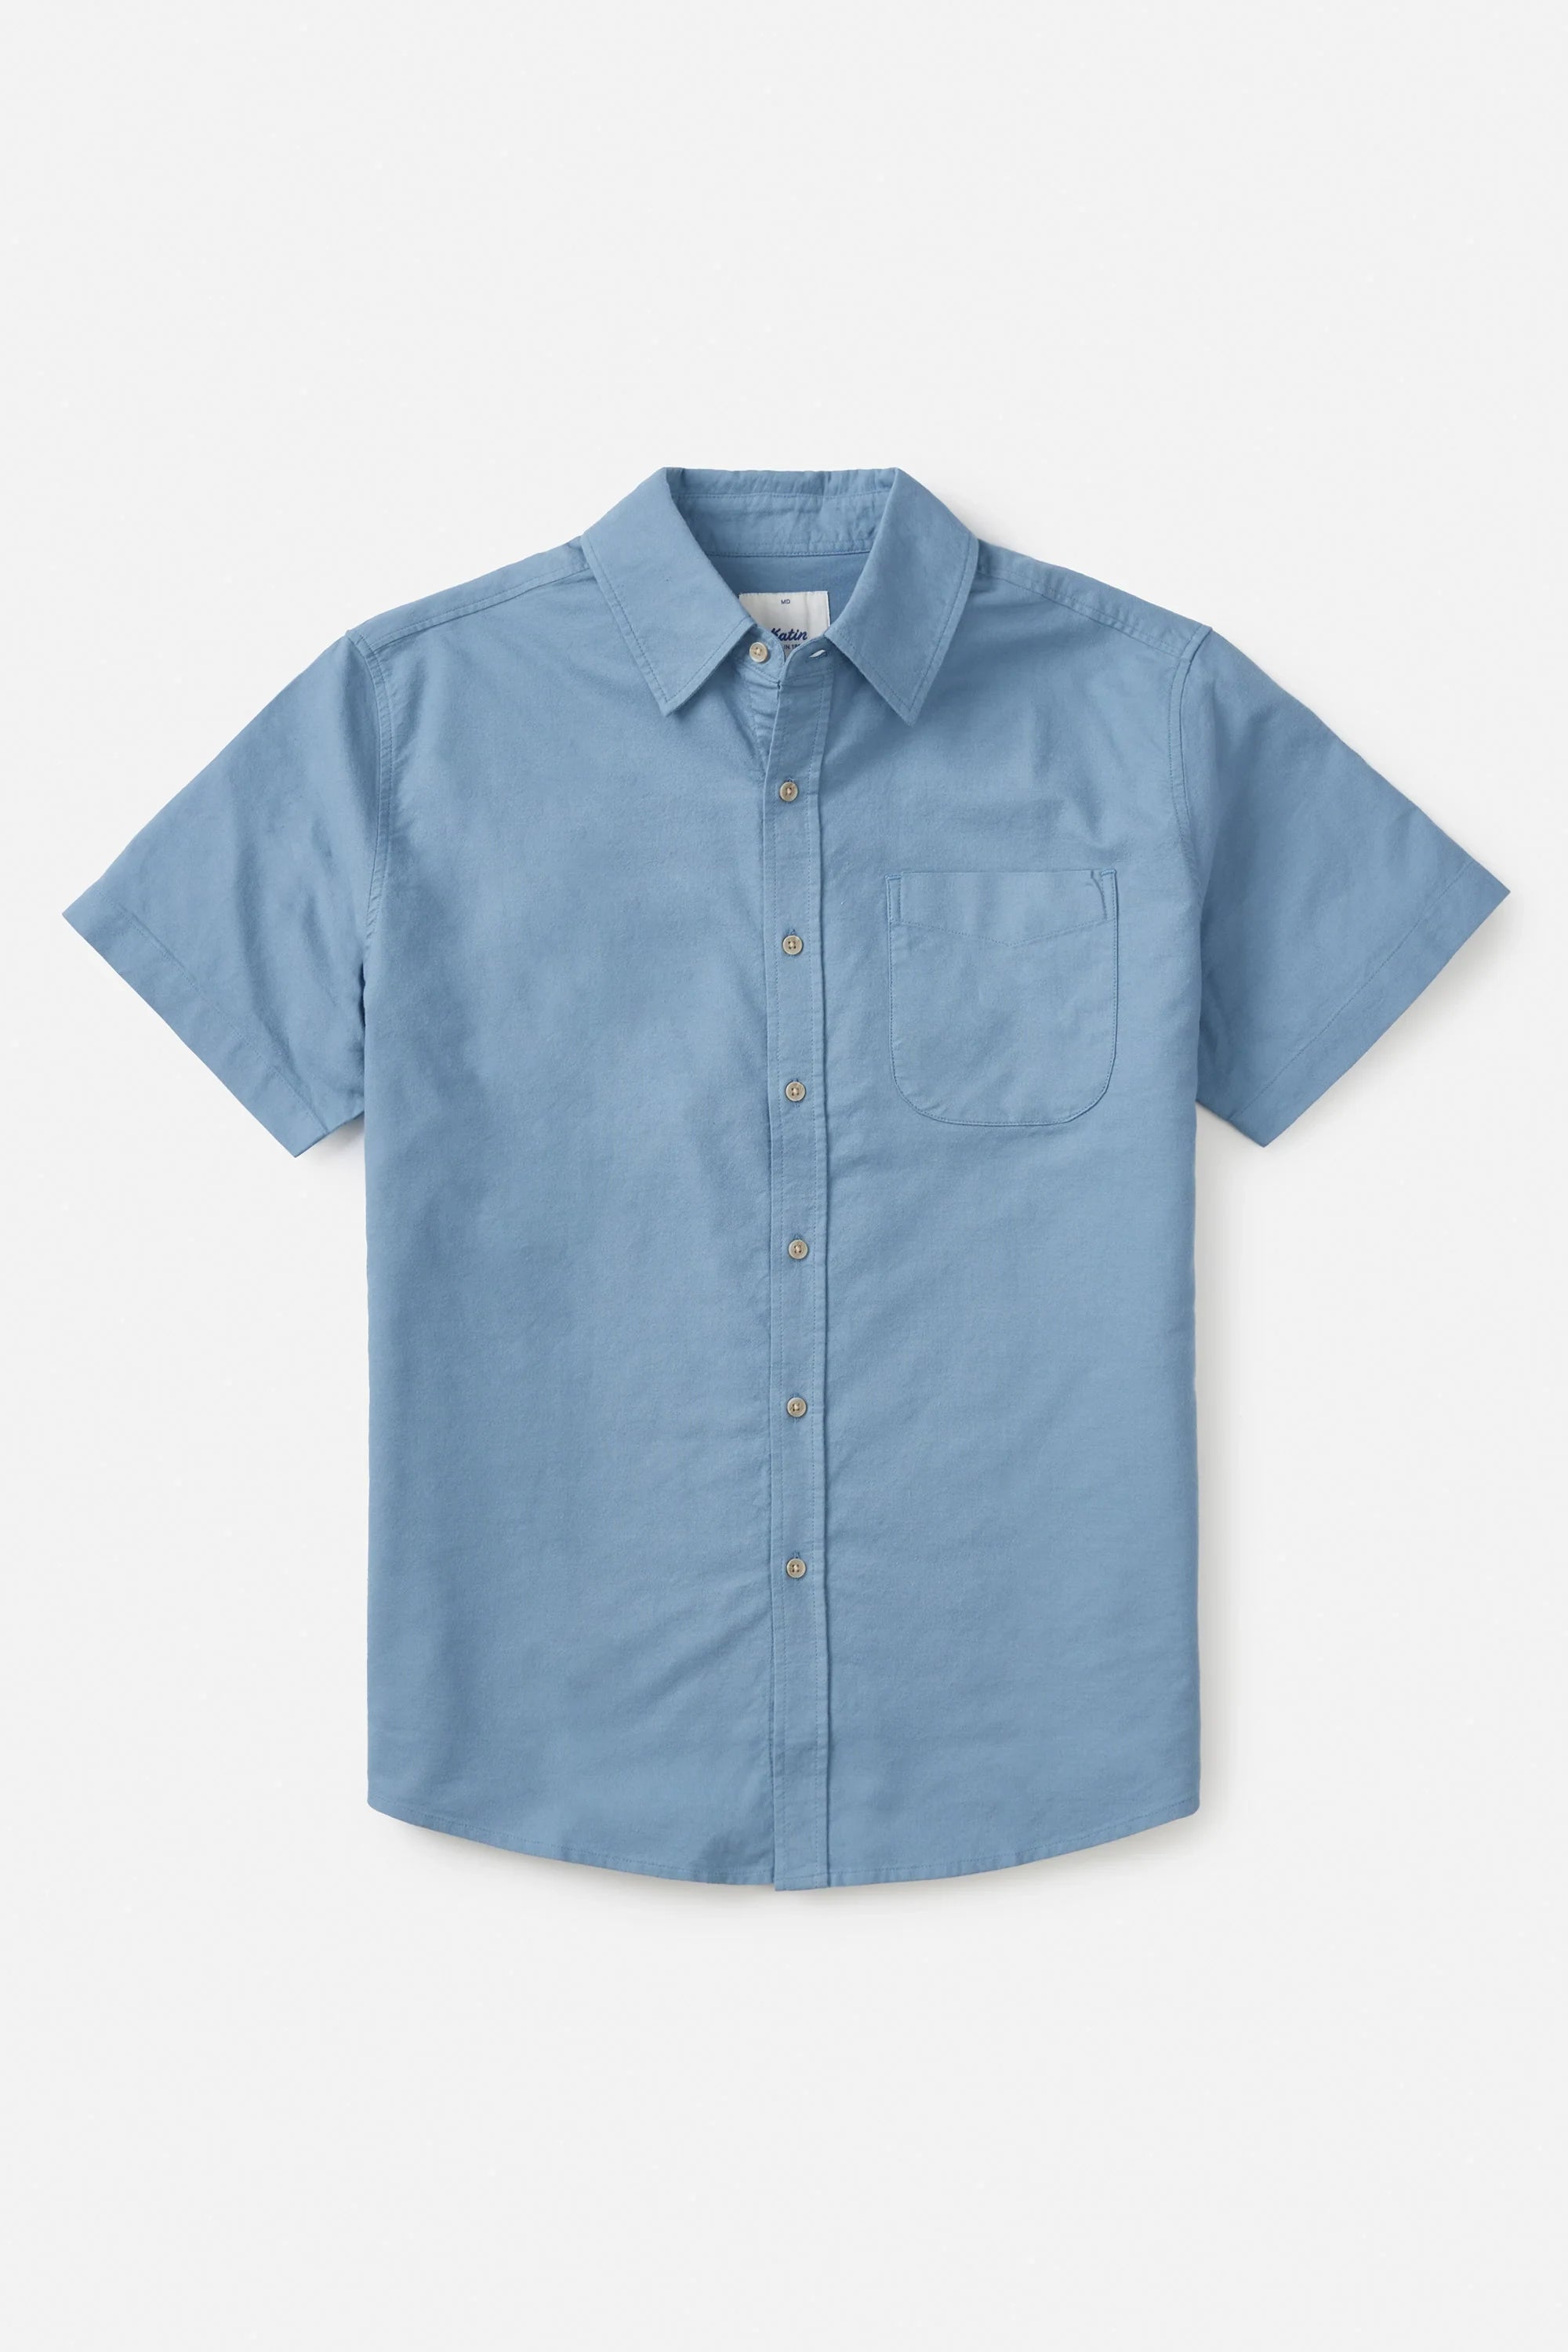 Colton Oxford Shirt Shirts Katin   